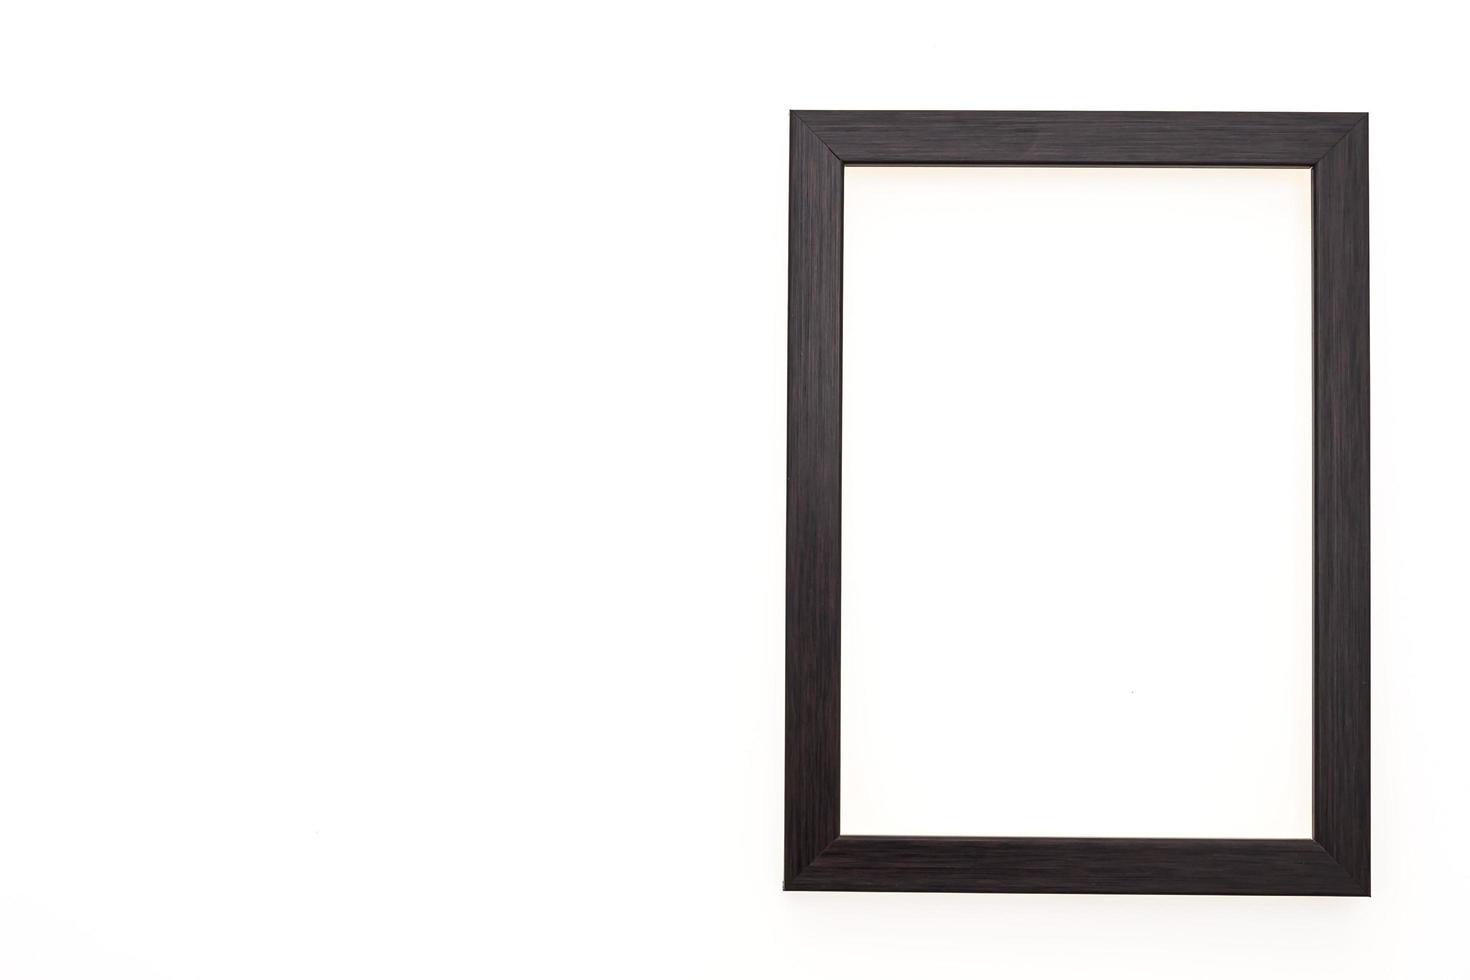 Wood photo frame isolated on white